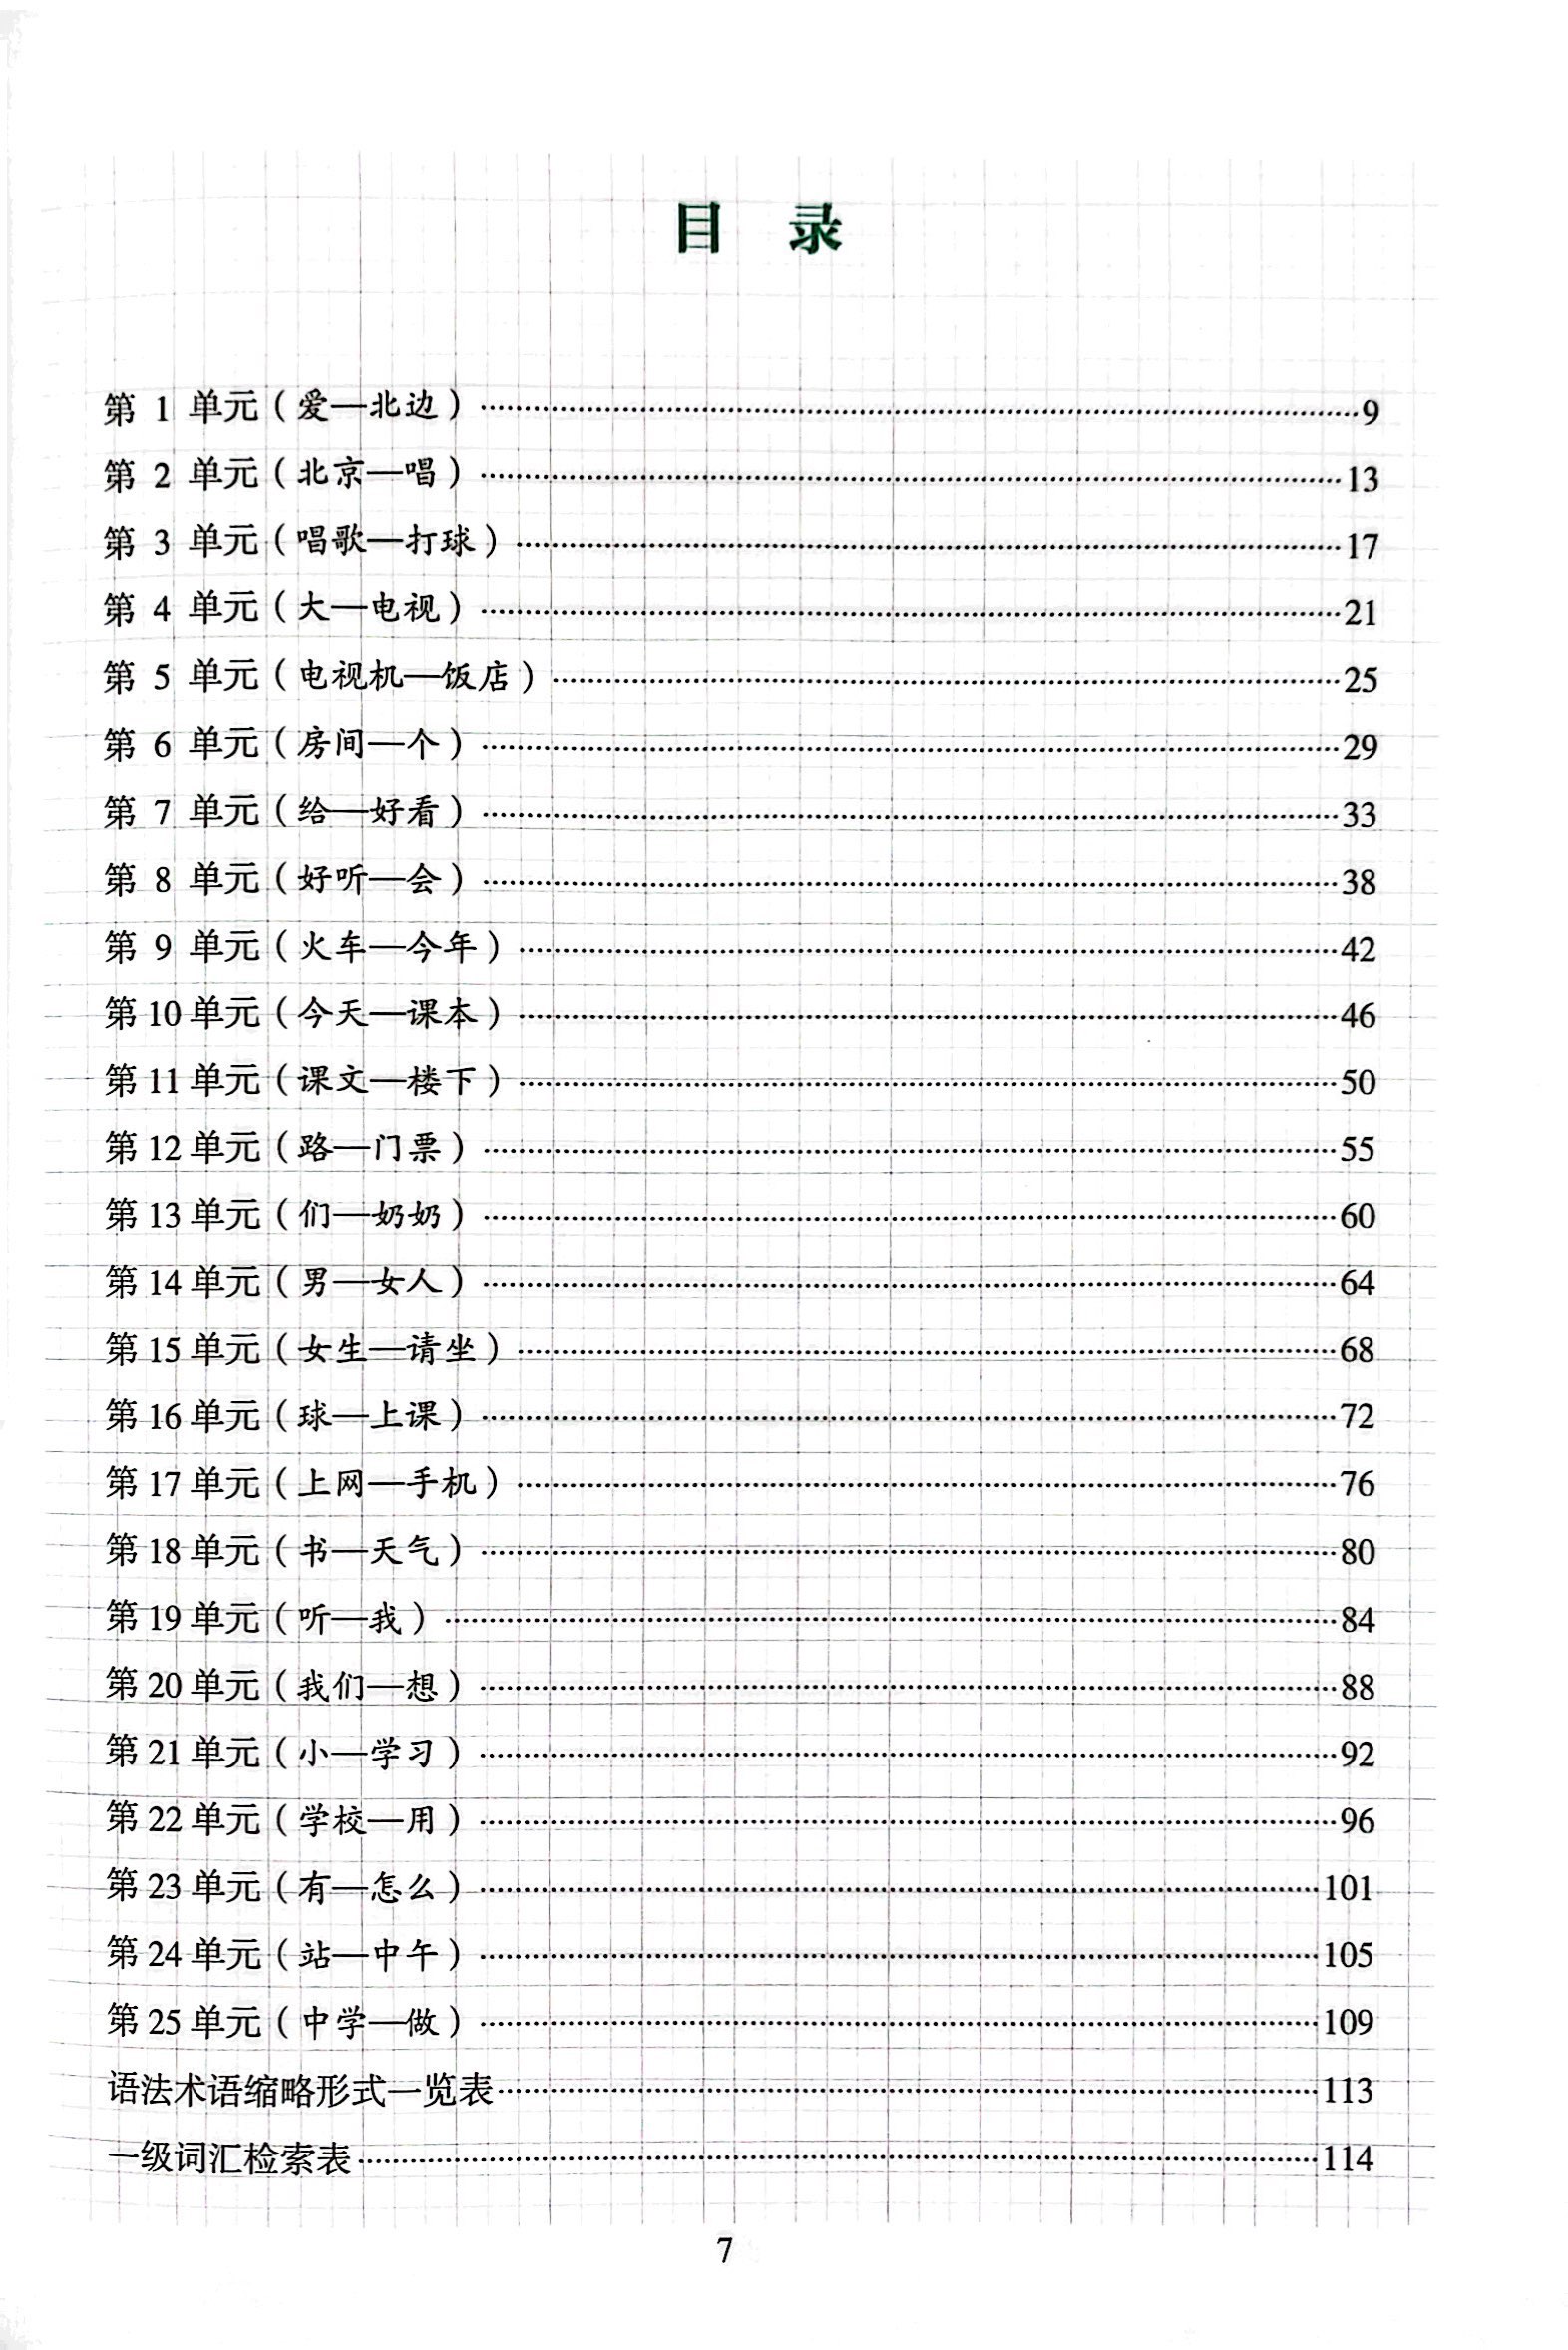 Tiêu Chuẩn Các Cấp Độ Tiếng Trung Trong Giáo Dục Tiếng Trung Quốc Tế - Giáo Trình Luyện Và Nhớ Nhanh Từ Vựng - Cấp Độ 1 PDF